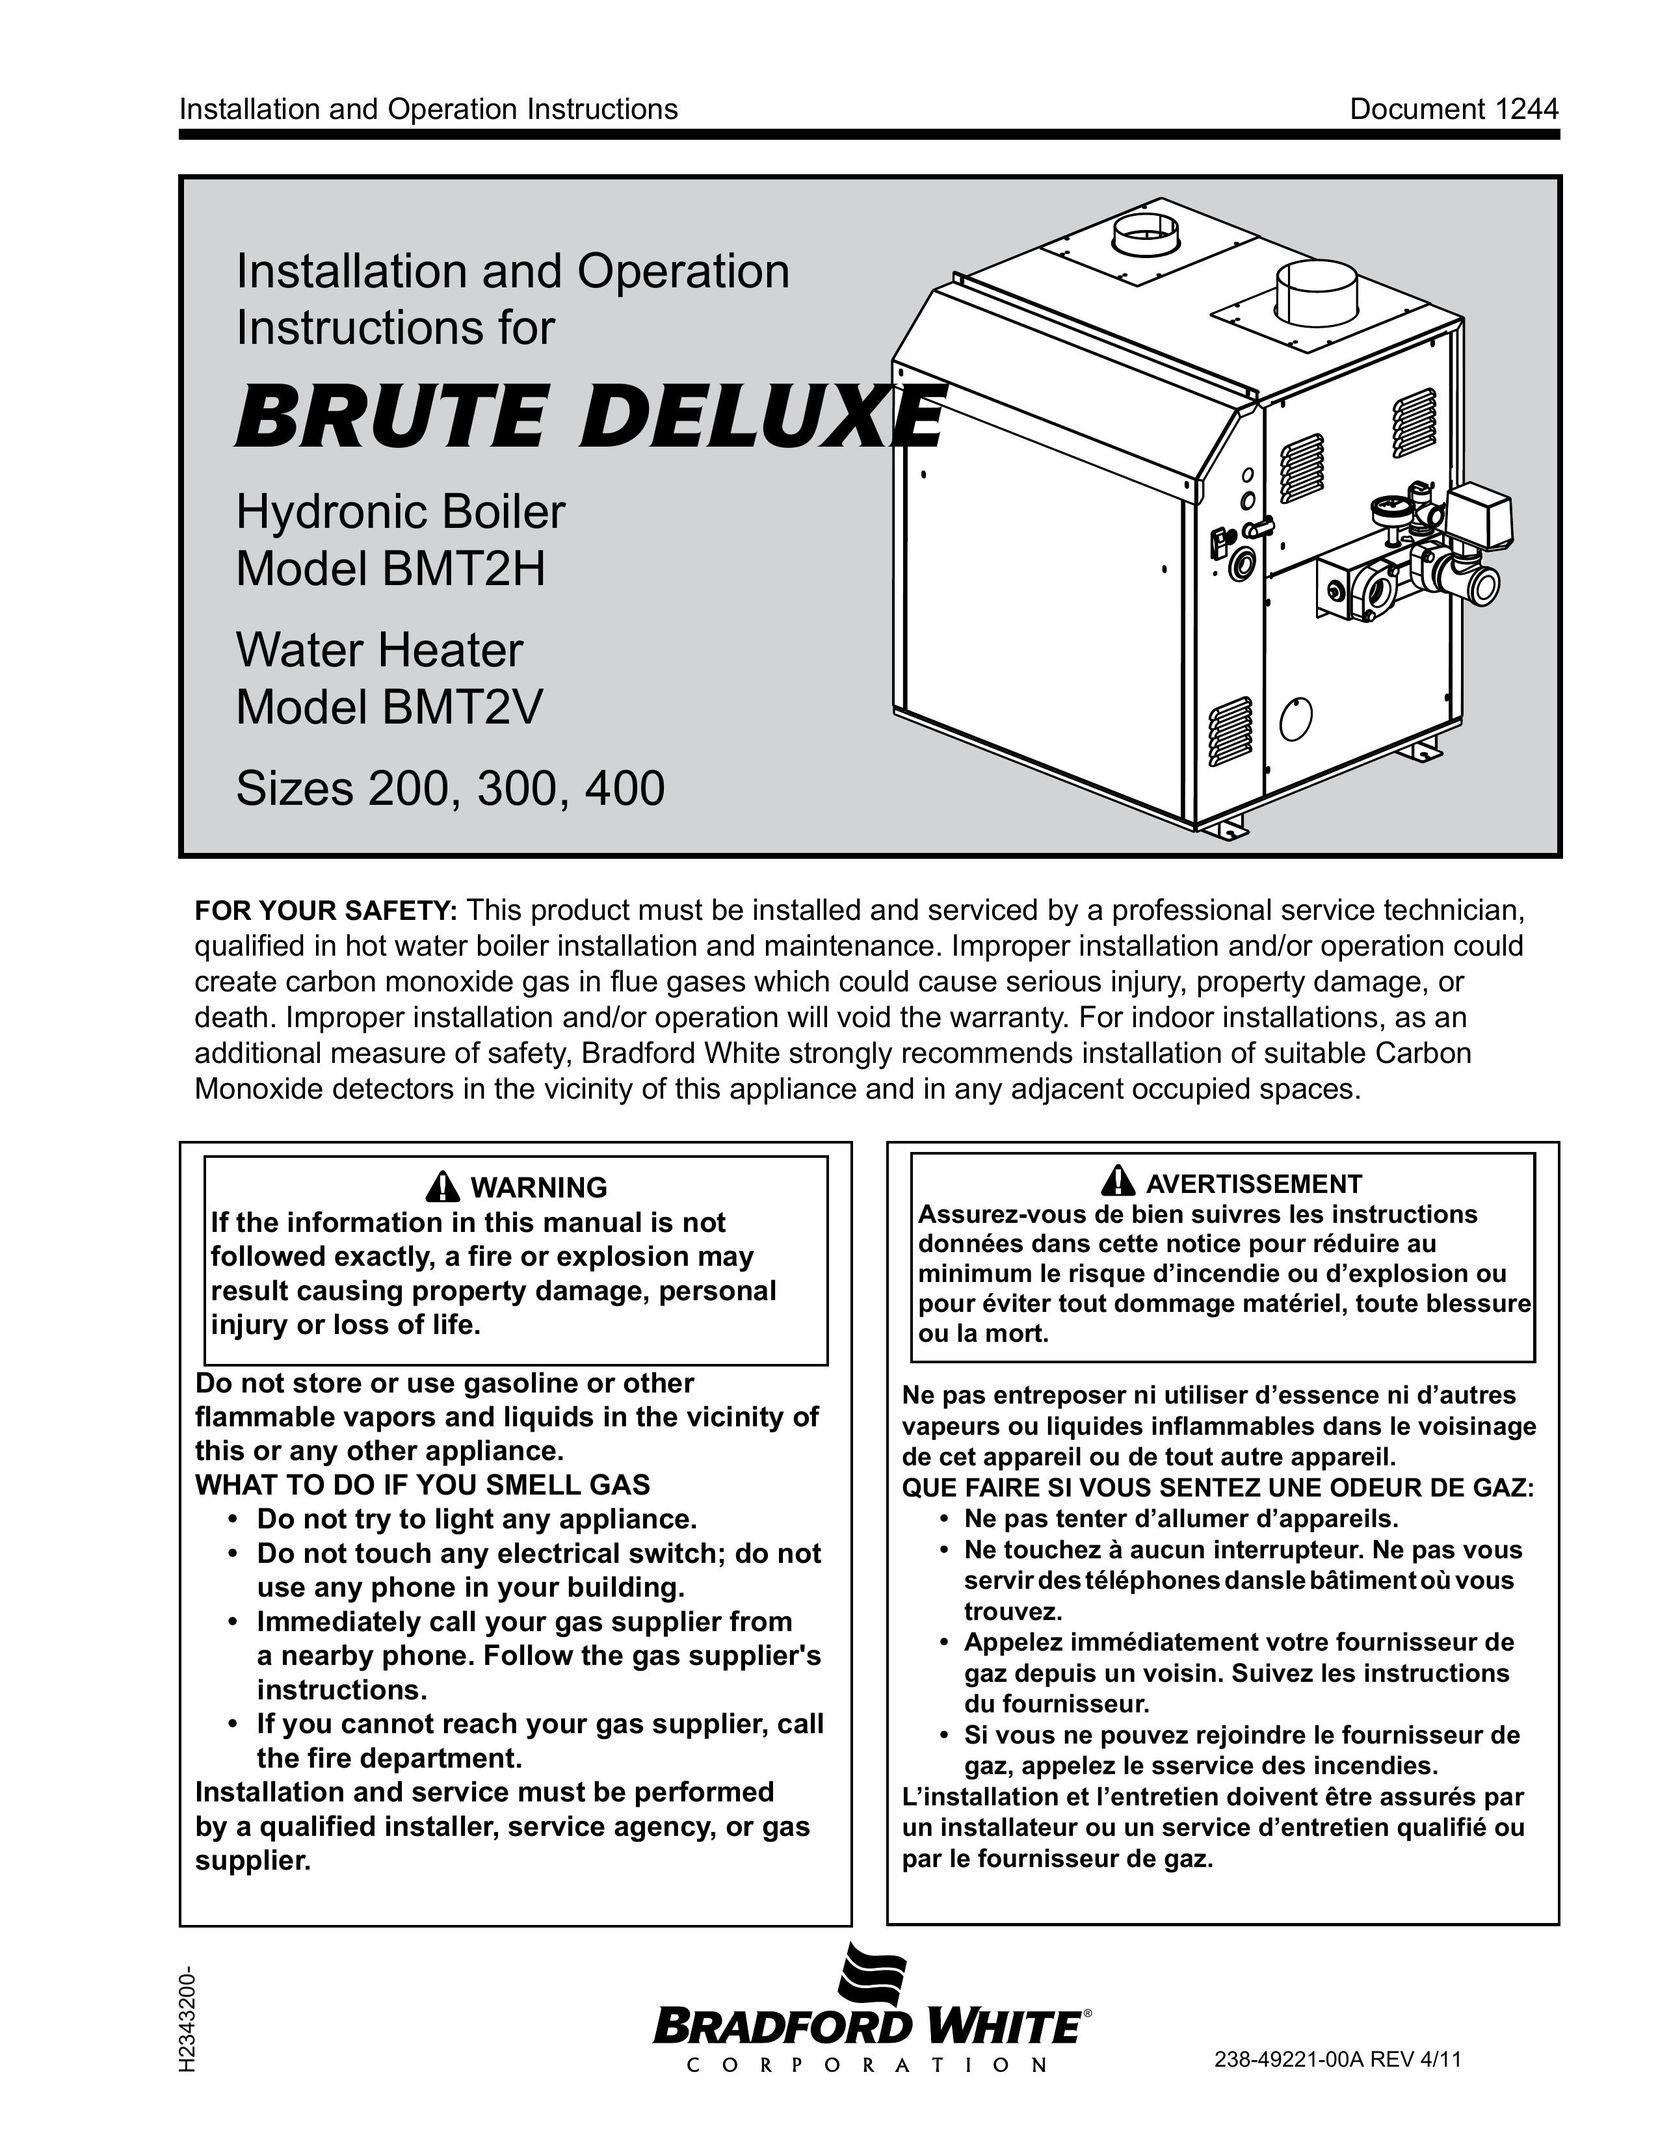 Bradford-White Corp BMT2V Boiler User Manual